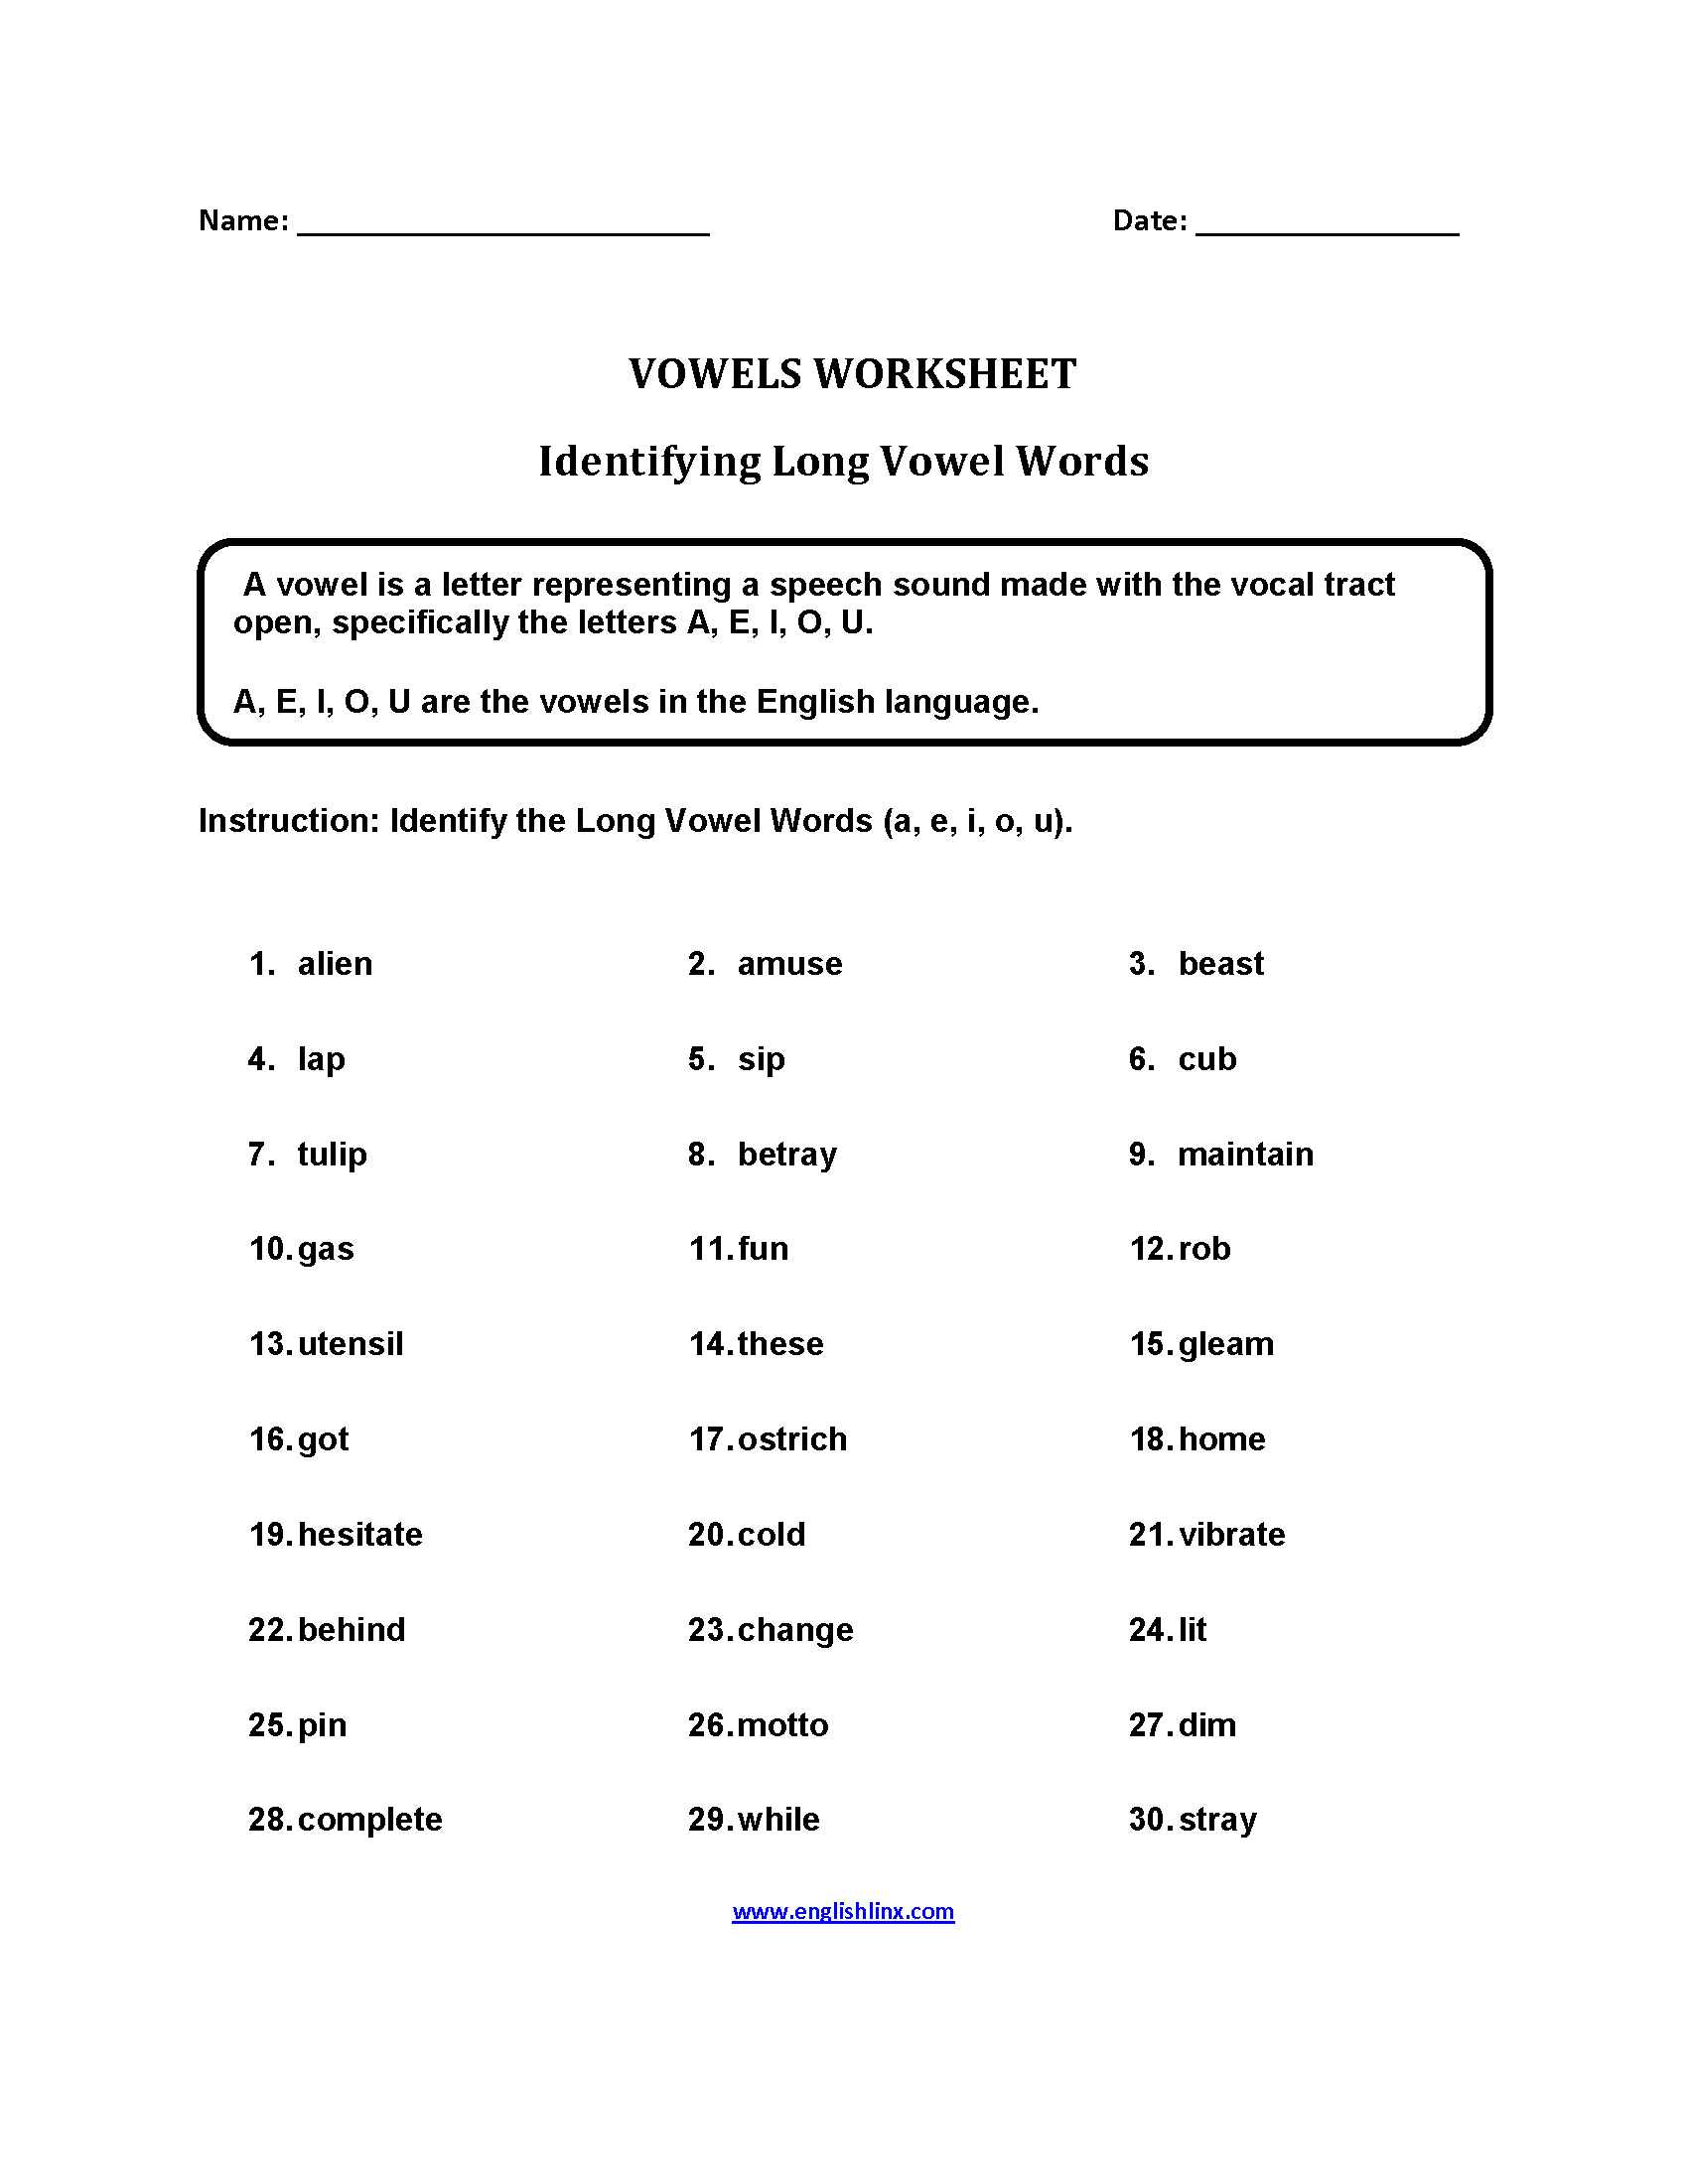 Vowels Worksheets Long Vowel Words Worksheets